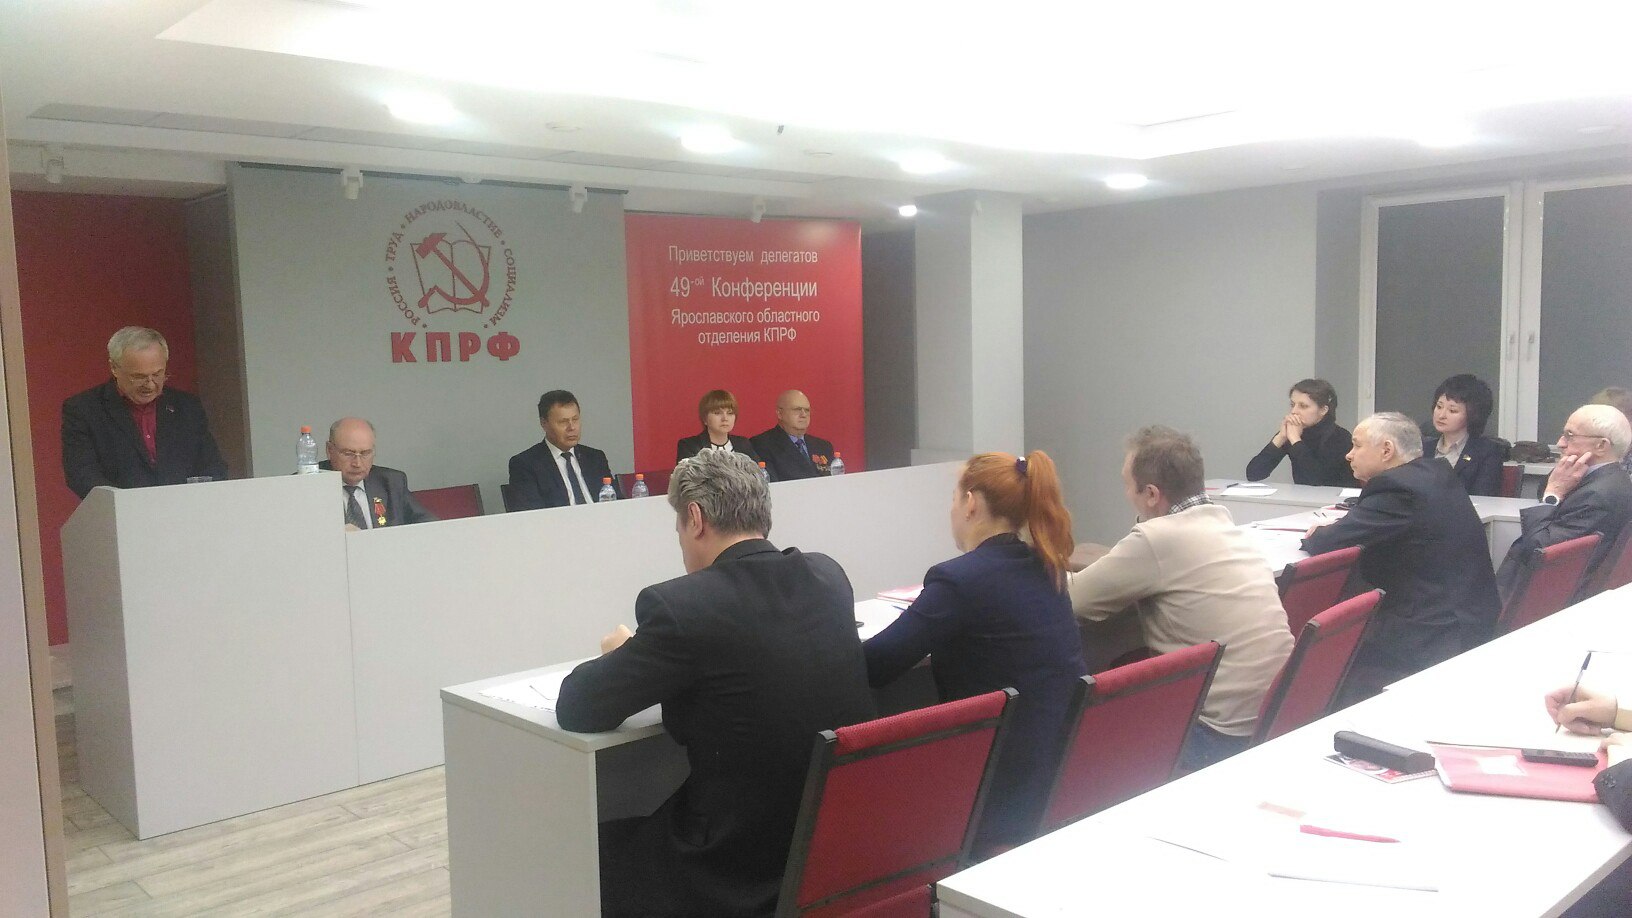 Началась работа отчётной конференции Ярославского областного отделения КПРФ.